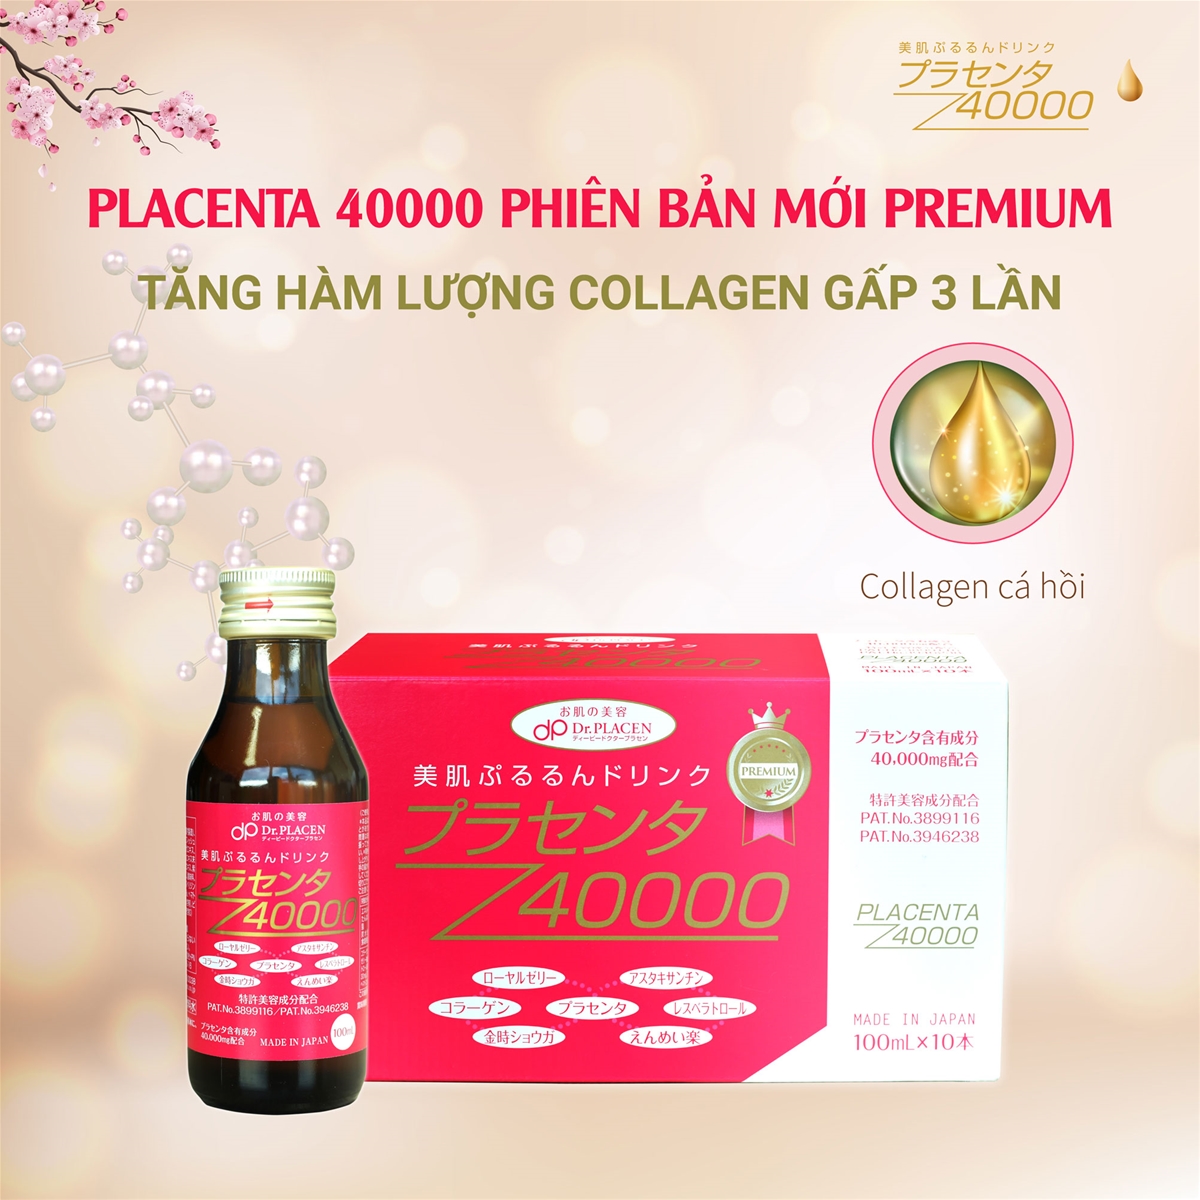 Placenta 40000 Premium tăng hàm lượng collagen gấp 3 lần